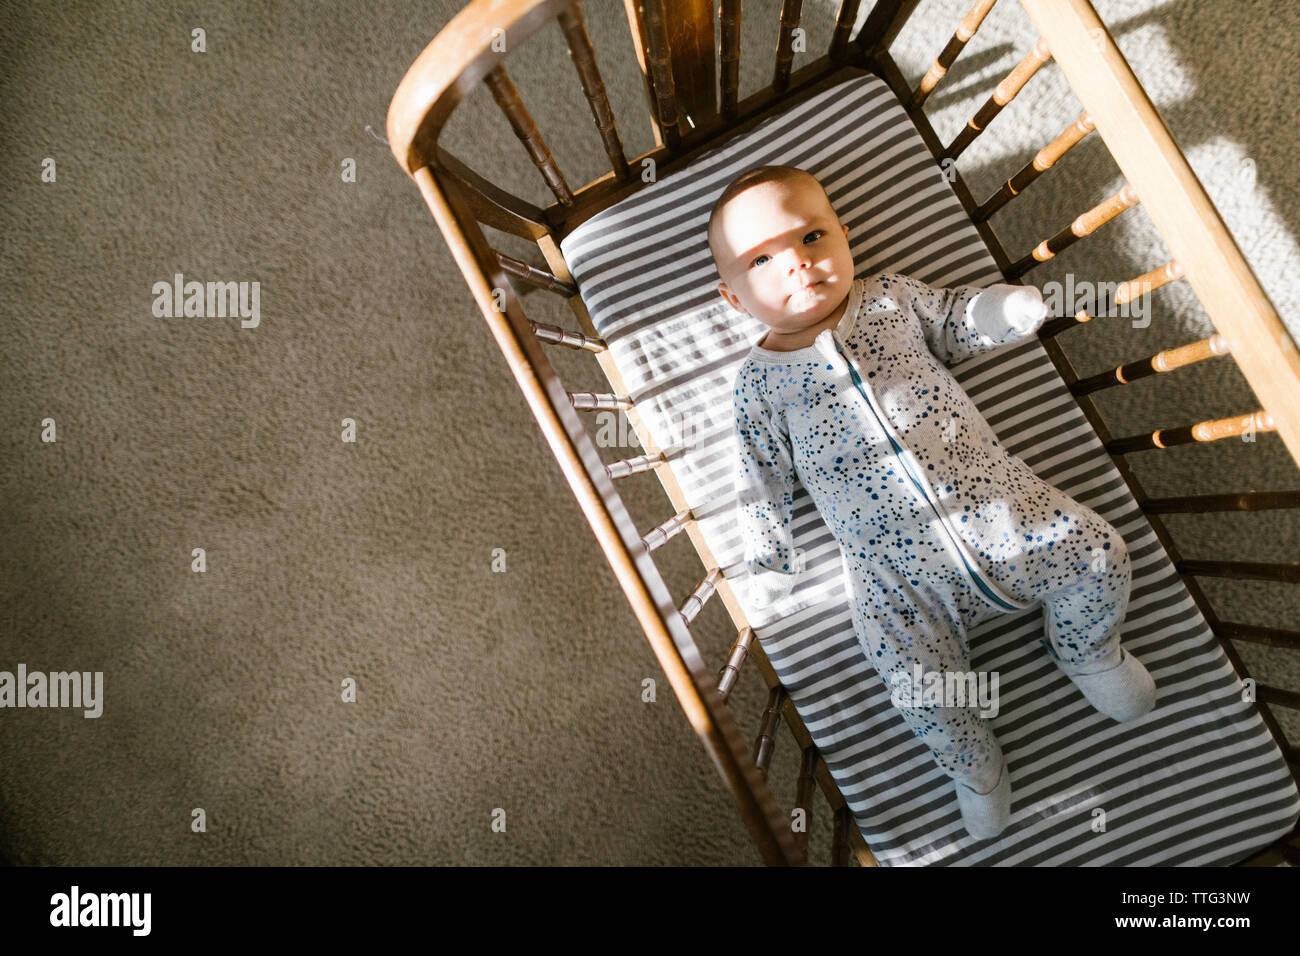 La lumière du soleil et ombres projetées sur un bébé dans un berceau en bois de pose Banque D'Images